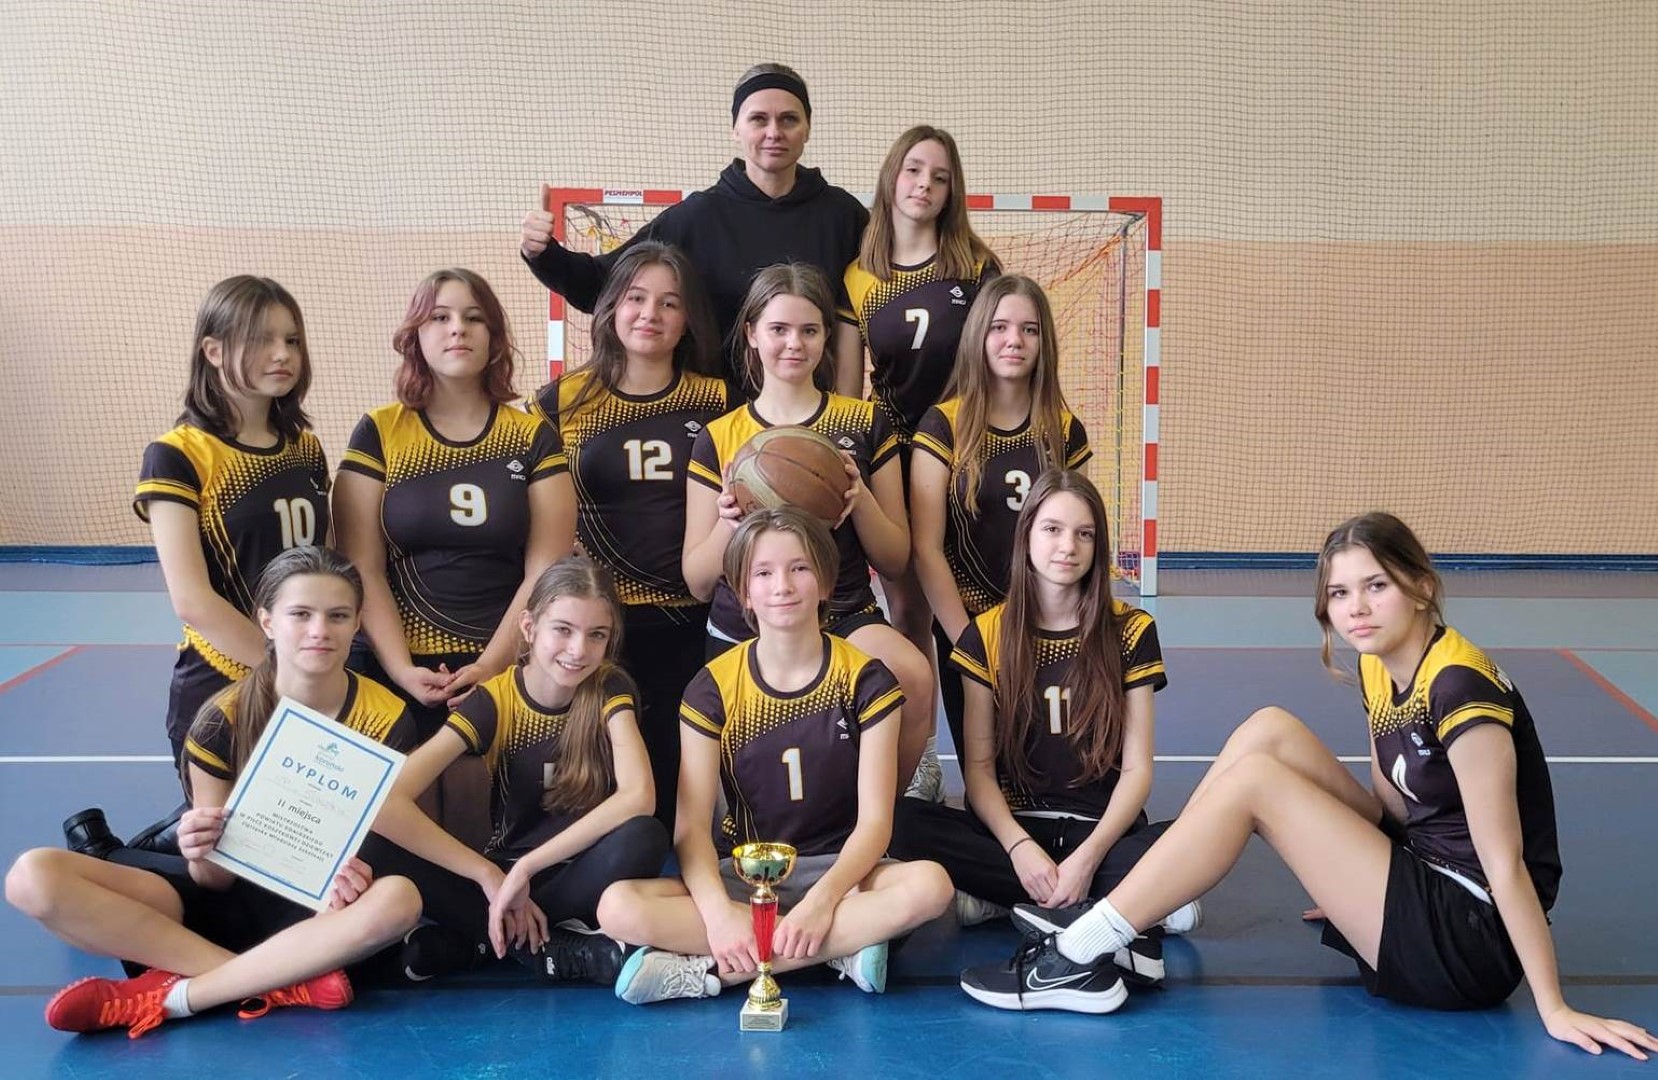 Szkolne sukcesy sportowe uczniw  ze Szkoy Podstawowej w Sawsku, w pice koszykowej.